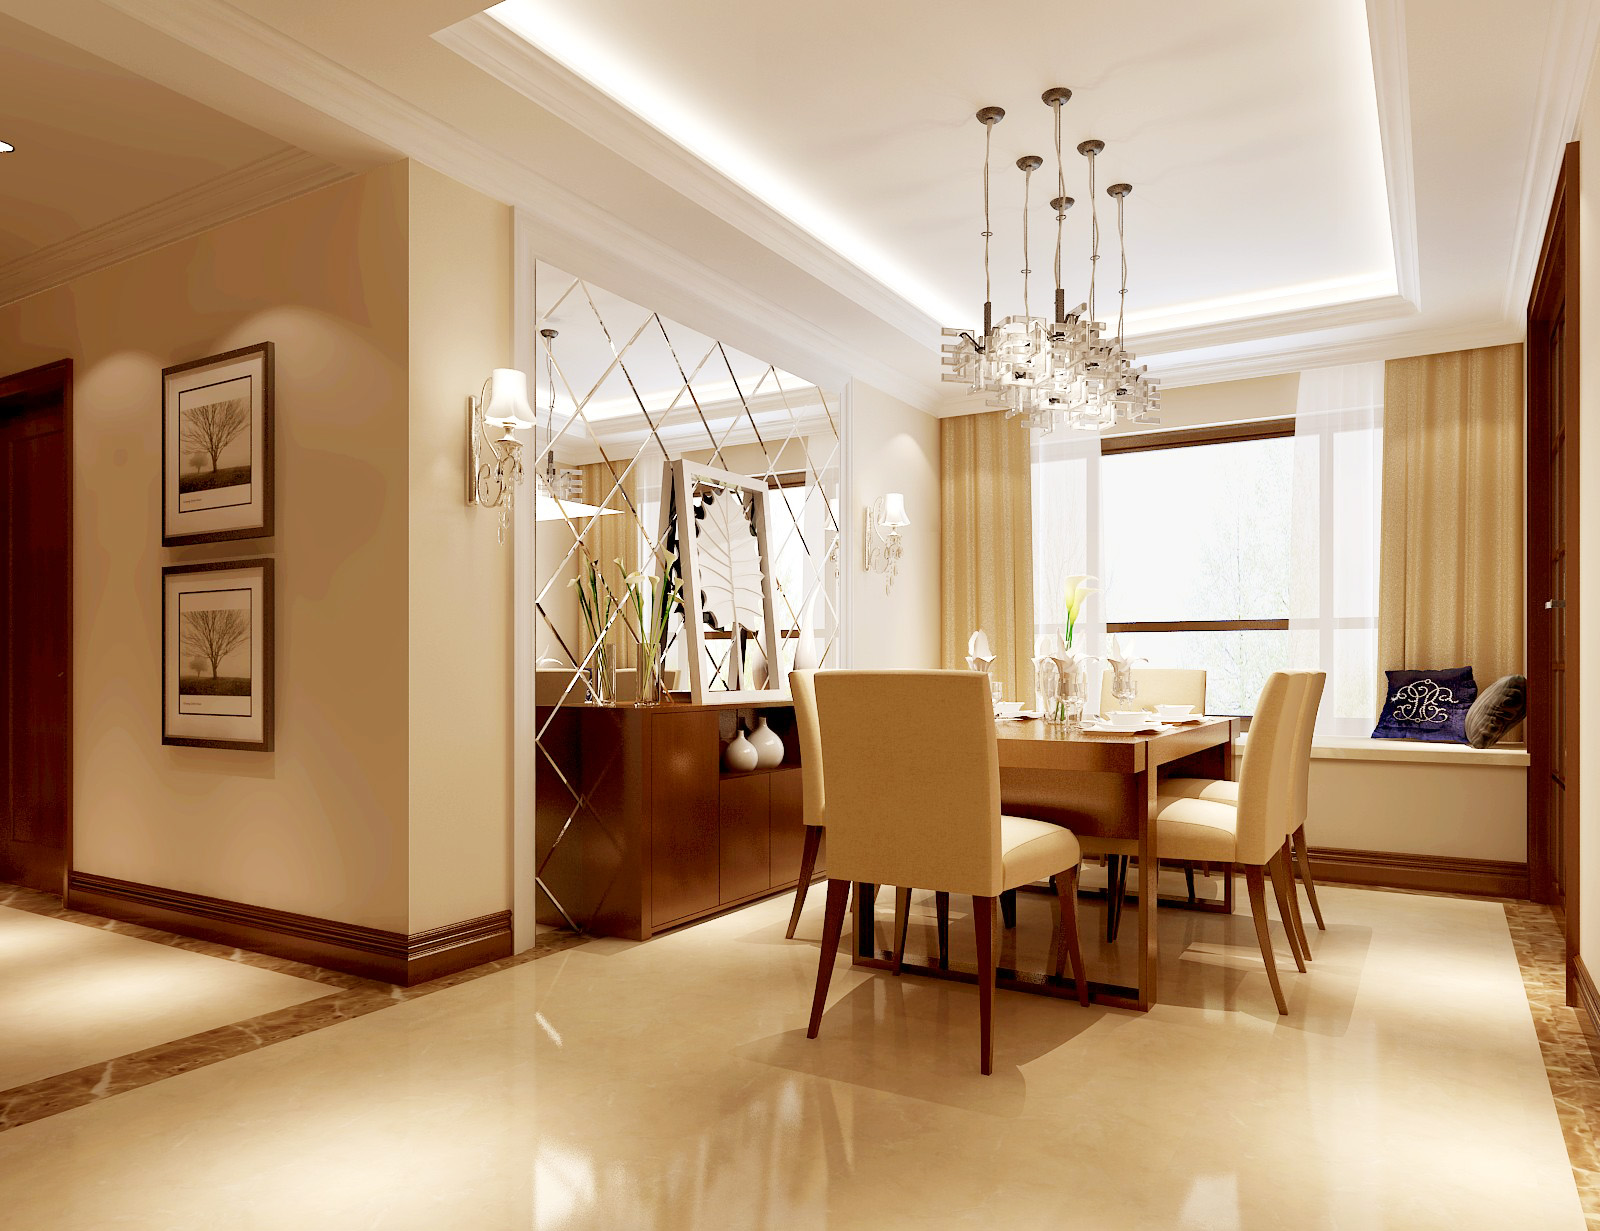 简约 欧式 公寓 高度国际 高富帅 餐厅图片来自重庆高度国际装饰工程有限公司在香悦四季-简欧风格的分享